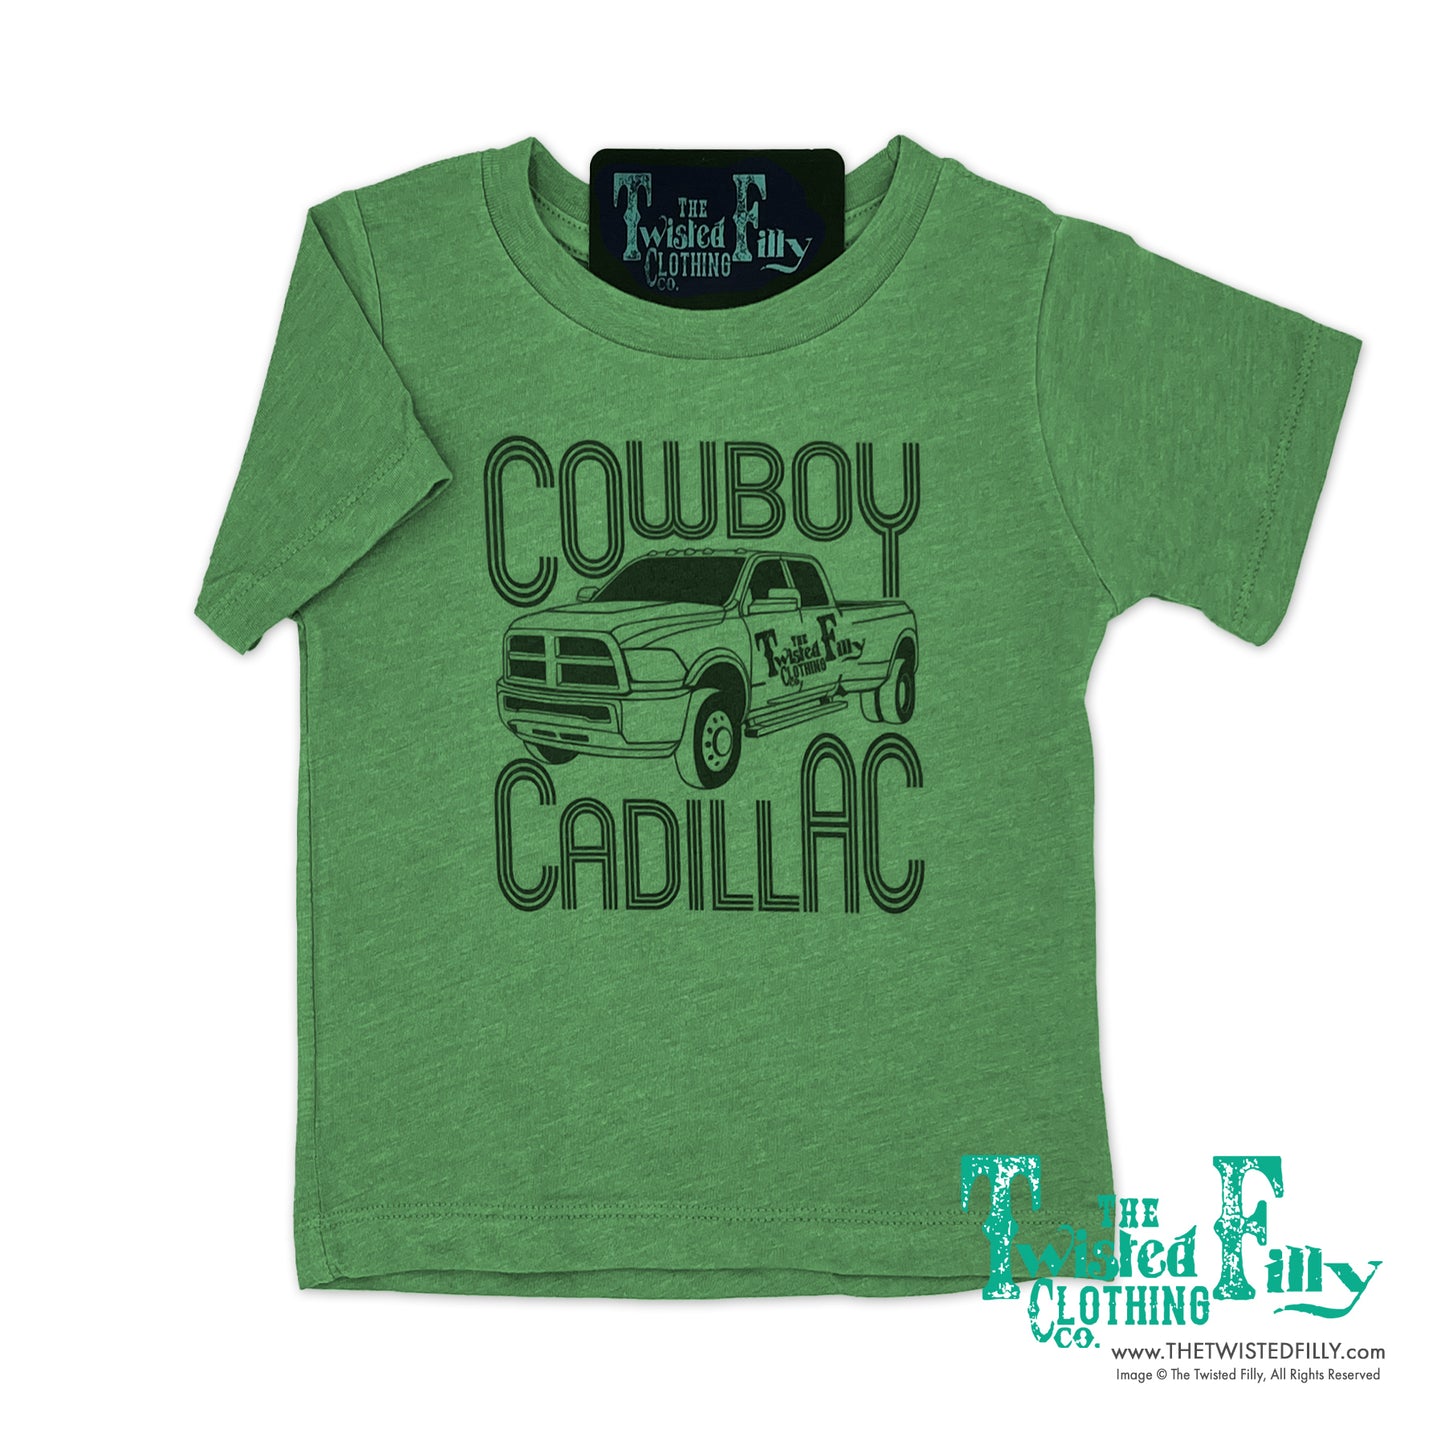 Cowboy Cadillac - S/S Adult Mens Tee - Green